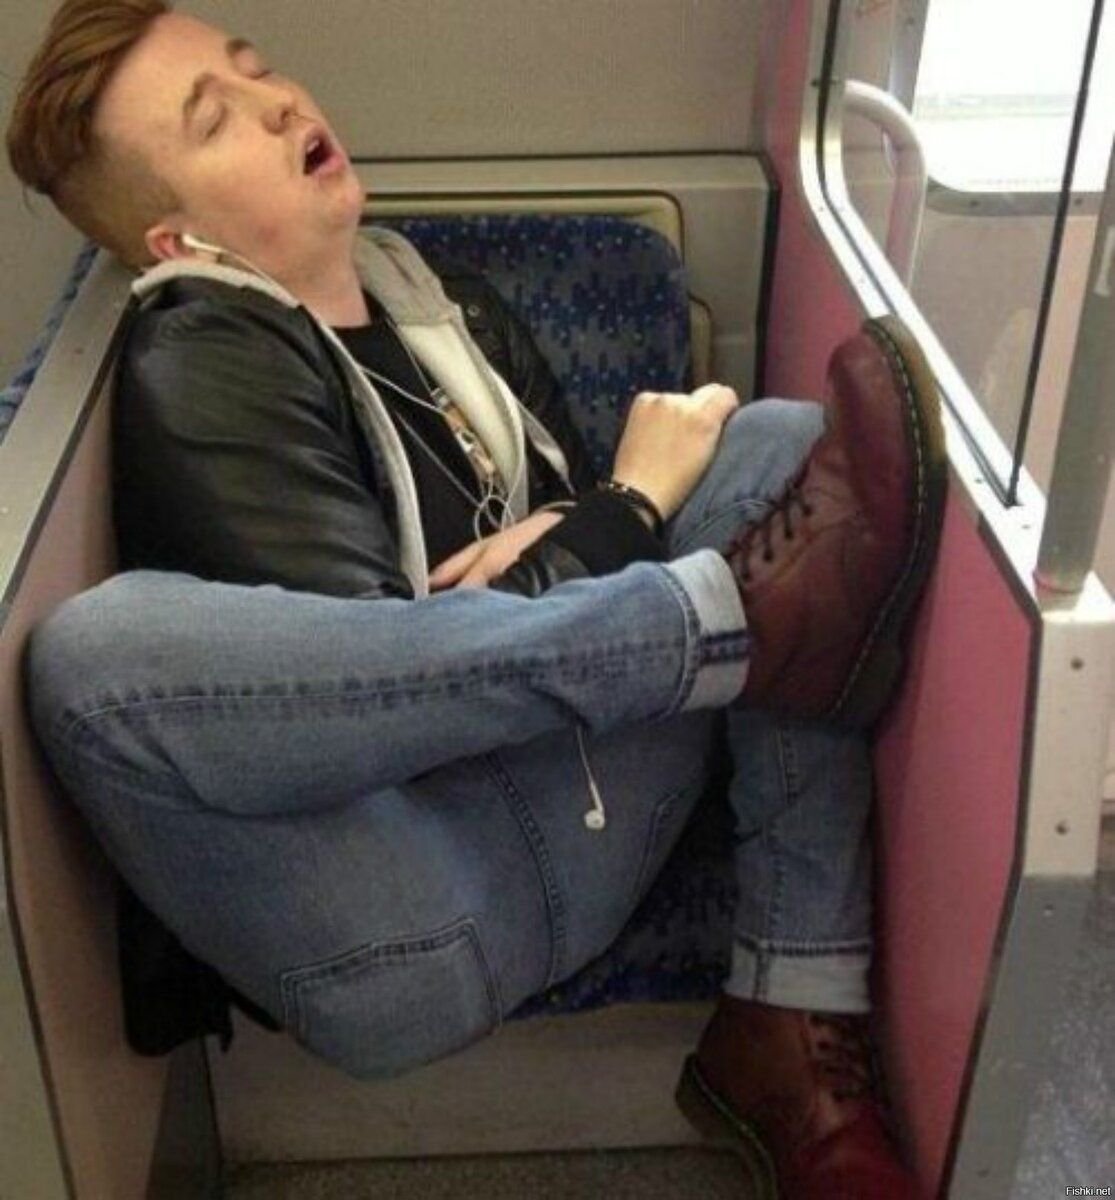 Человек спит в автобусе